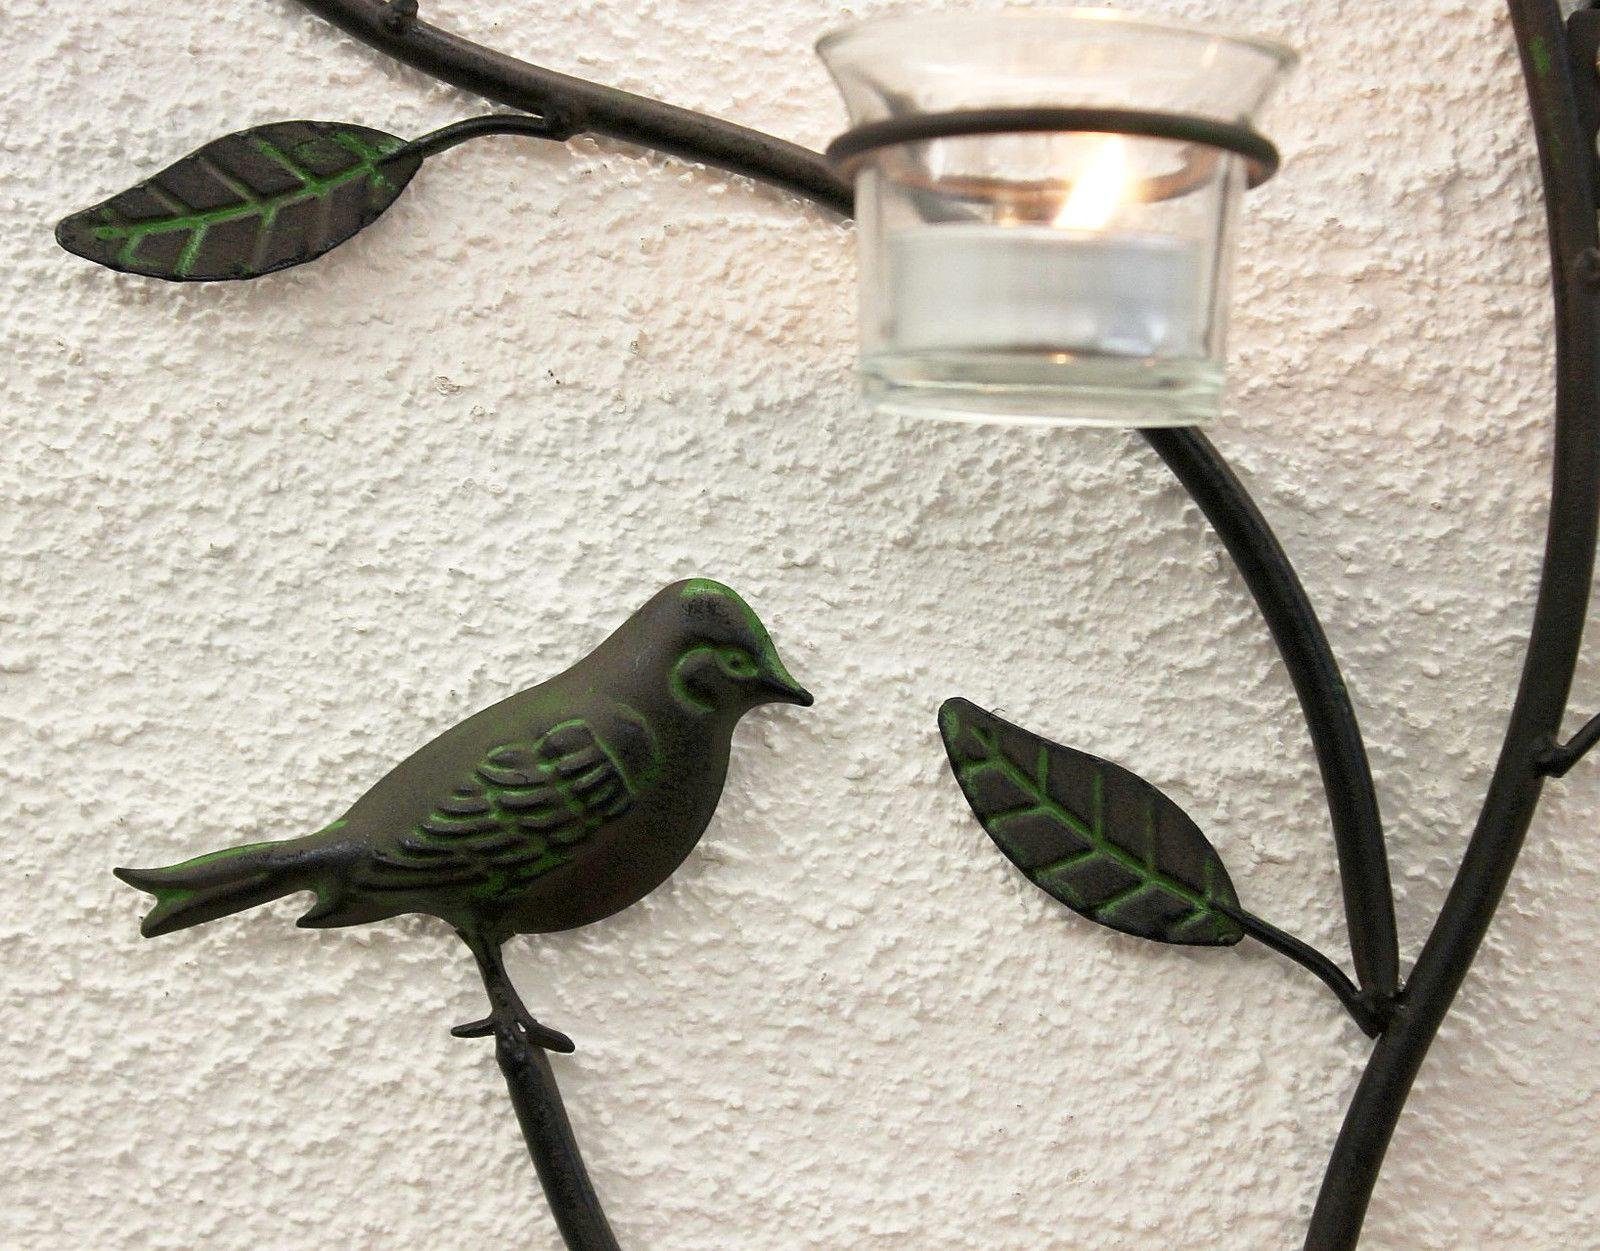 DanDiBo Teelichthalter Wandteelichthalter 131002 cm Metall Wandleuchter Teelichthalter Kerzenhalter 57